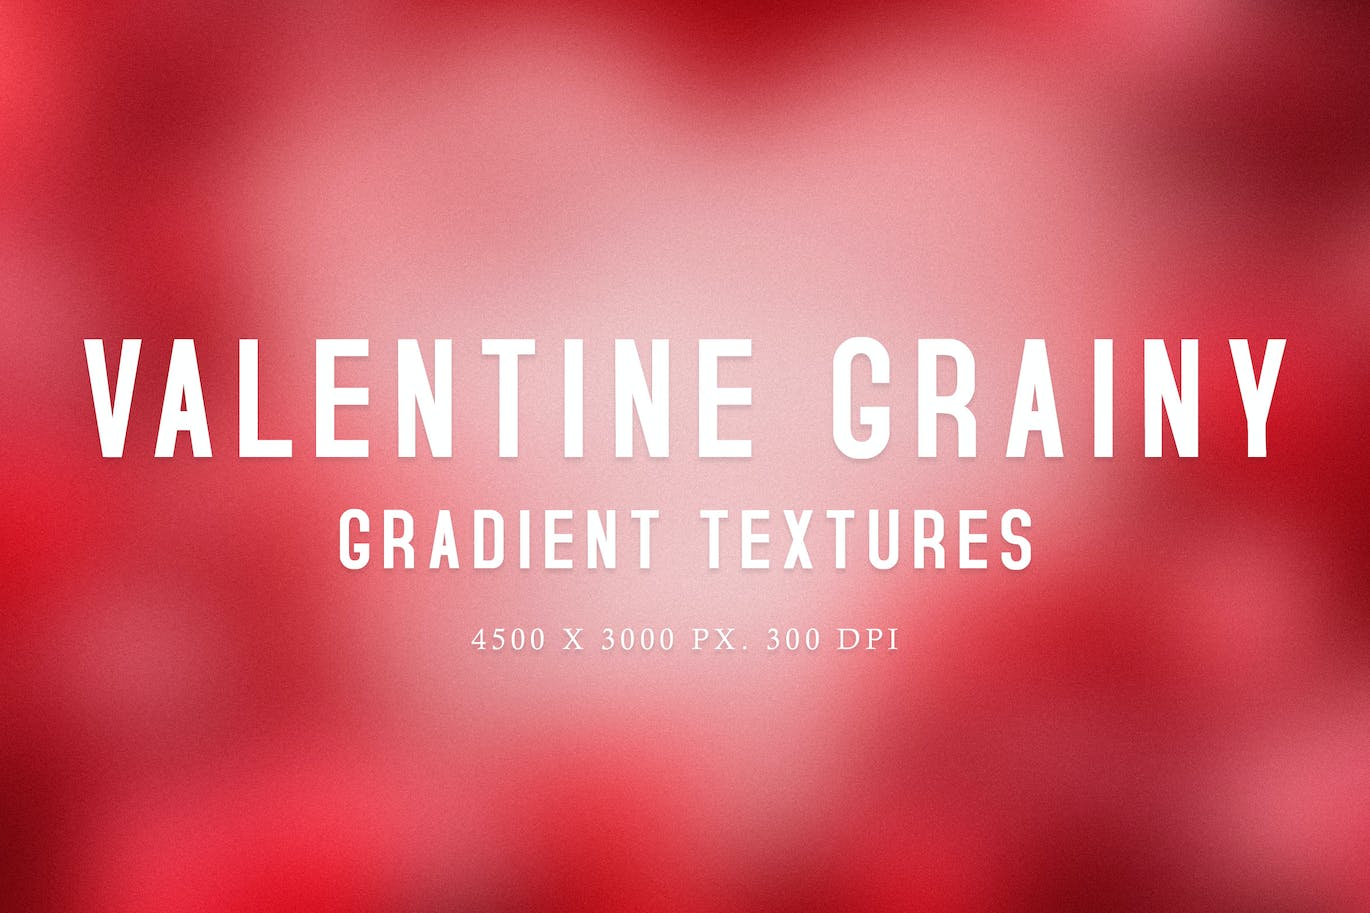 情人节颗粒渐变纹理 Valentine Grainy Gradient Textures 图片素材 第1张